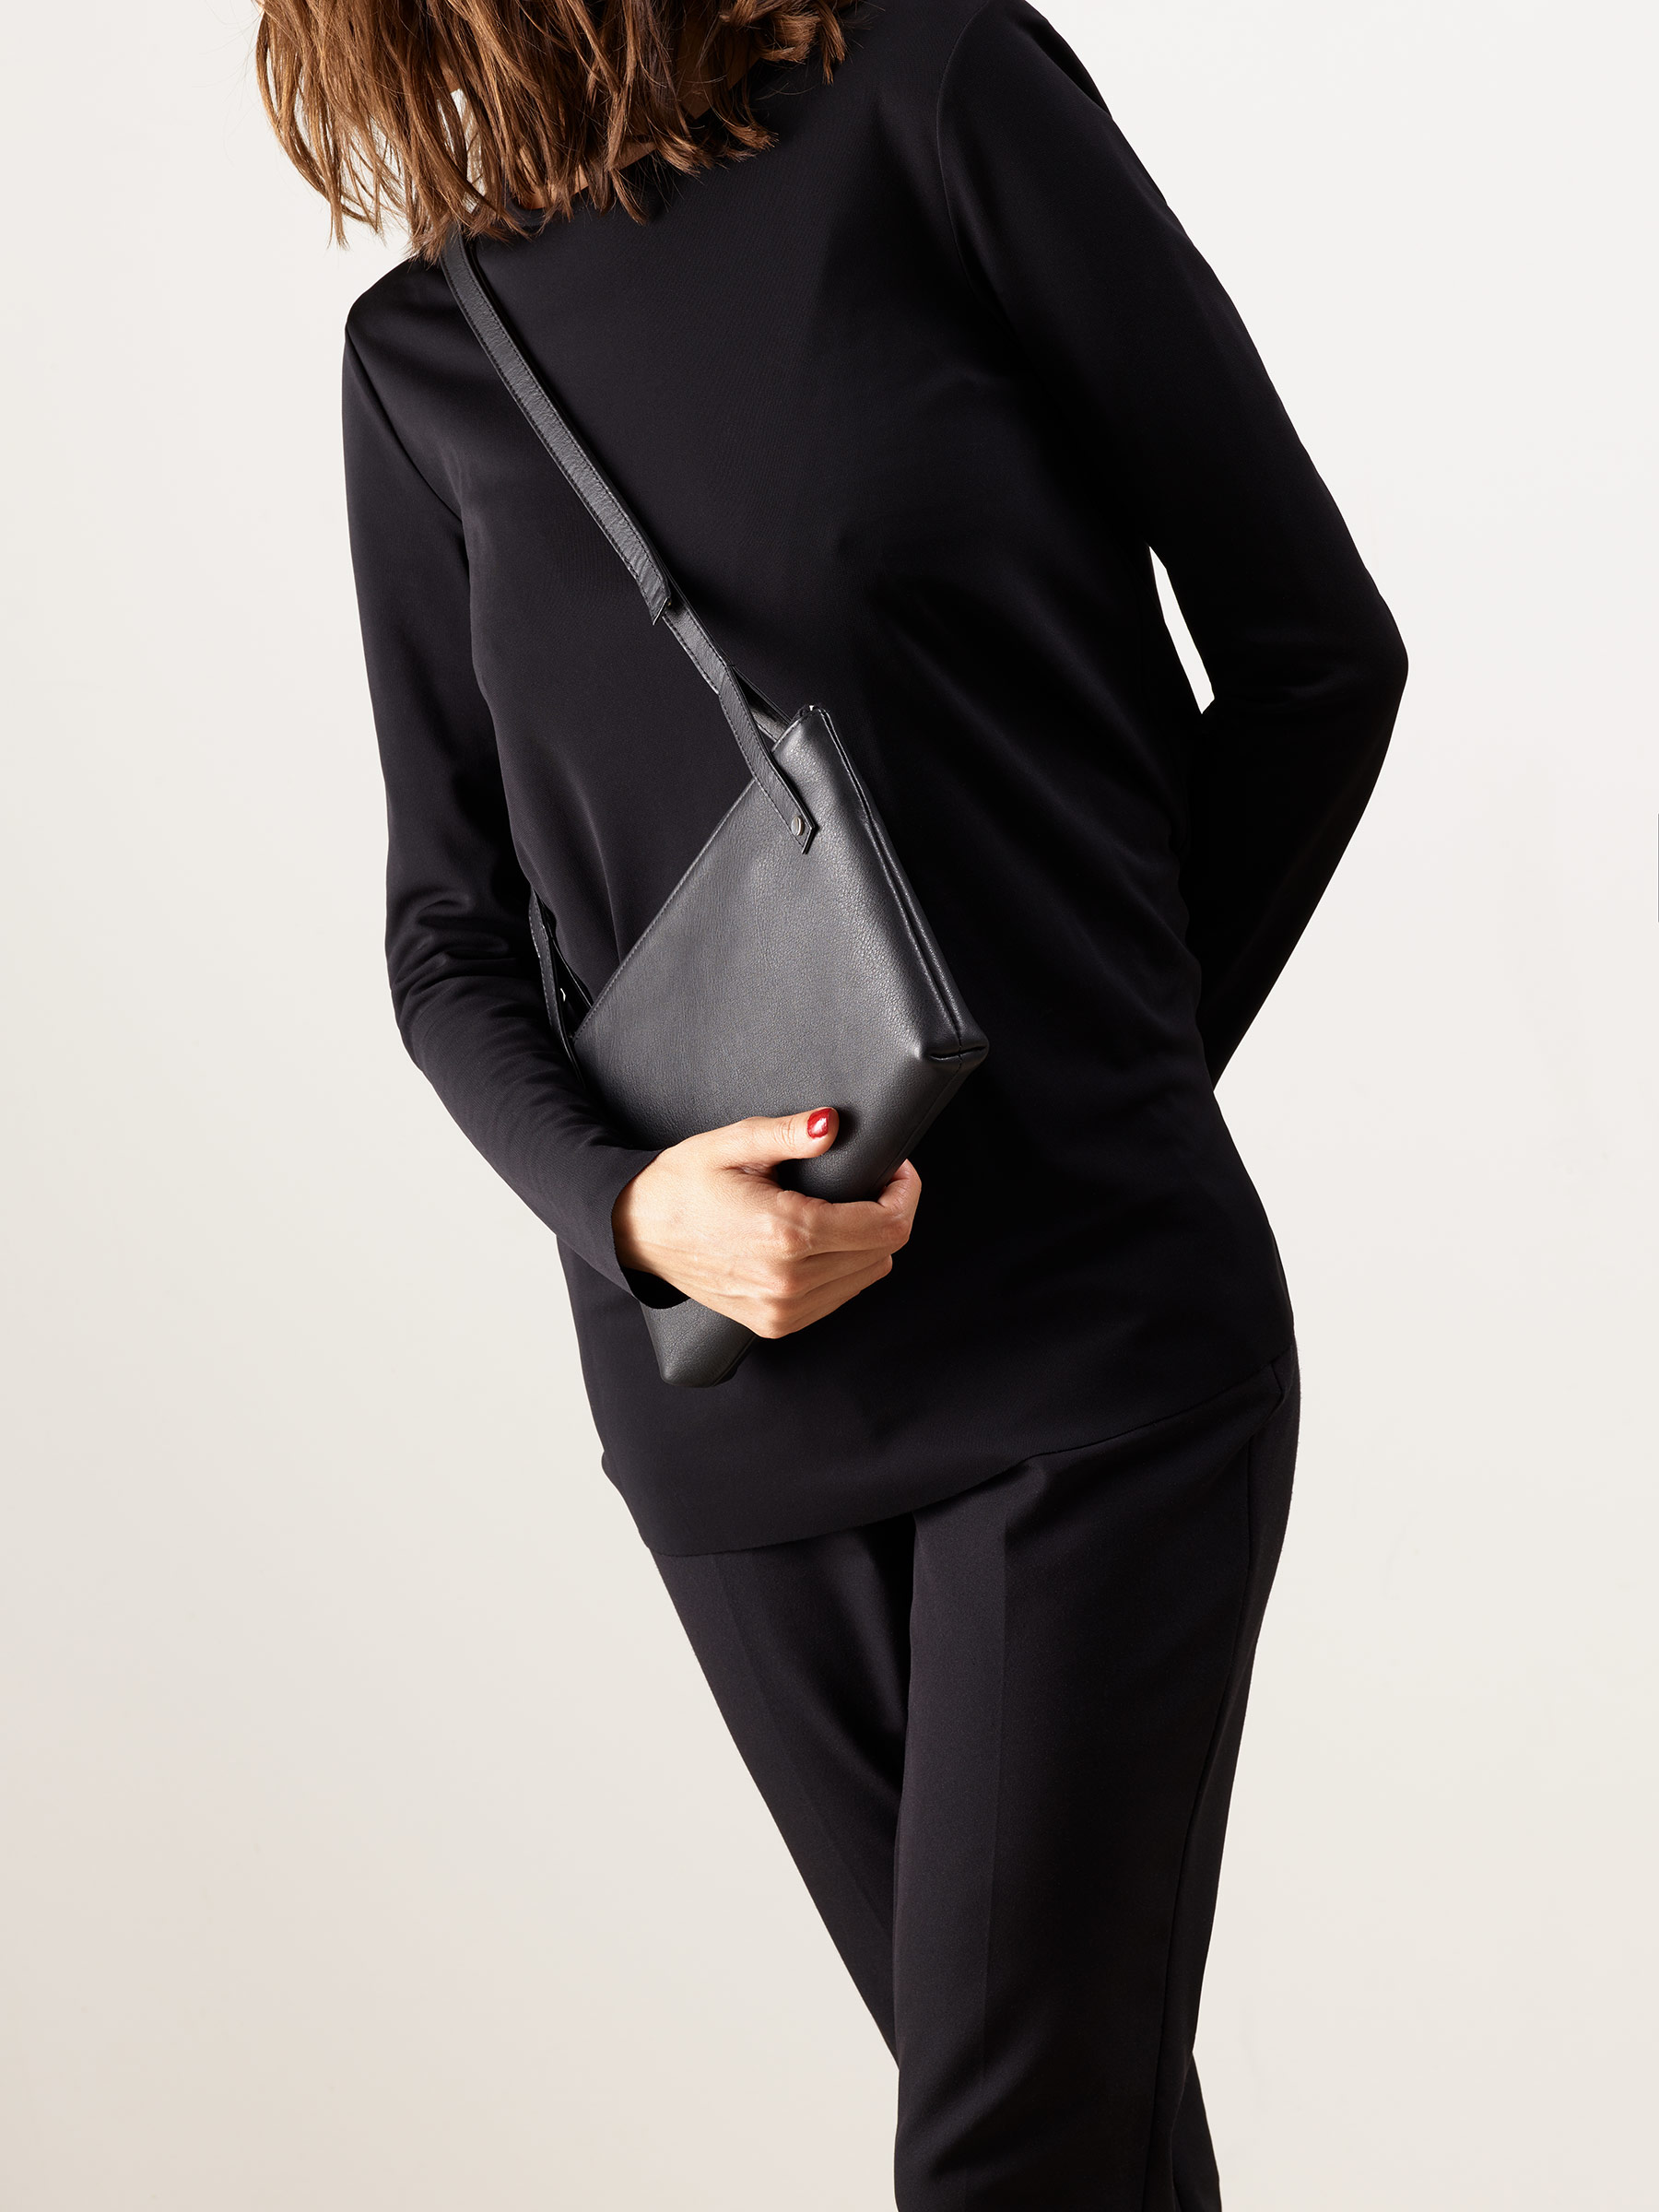 KRAMER 3 shoulder bag in black calfskin leather